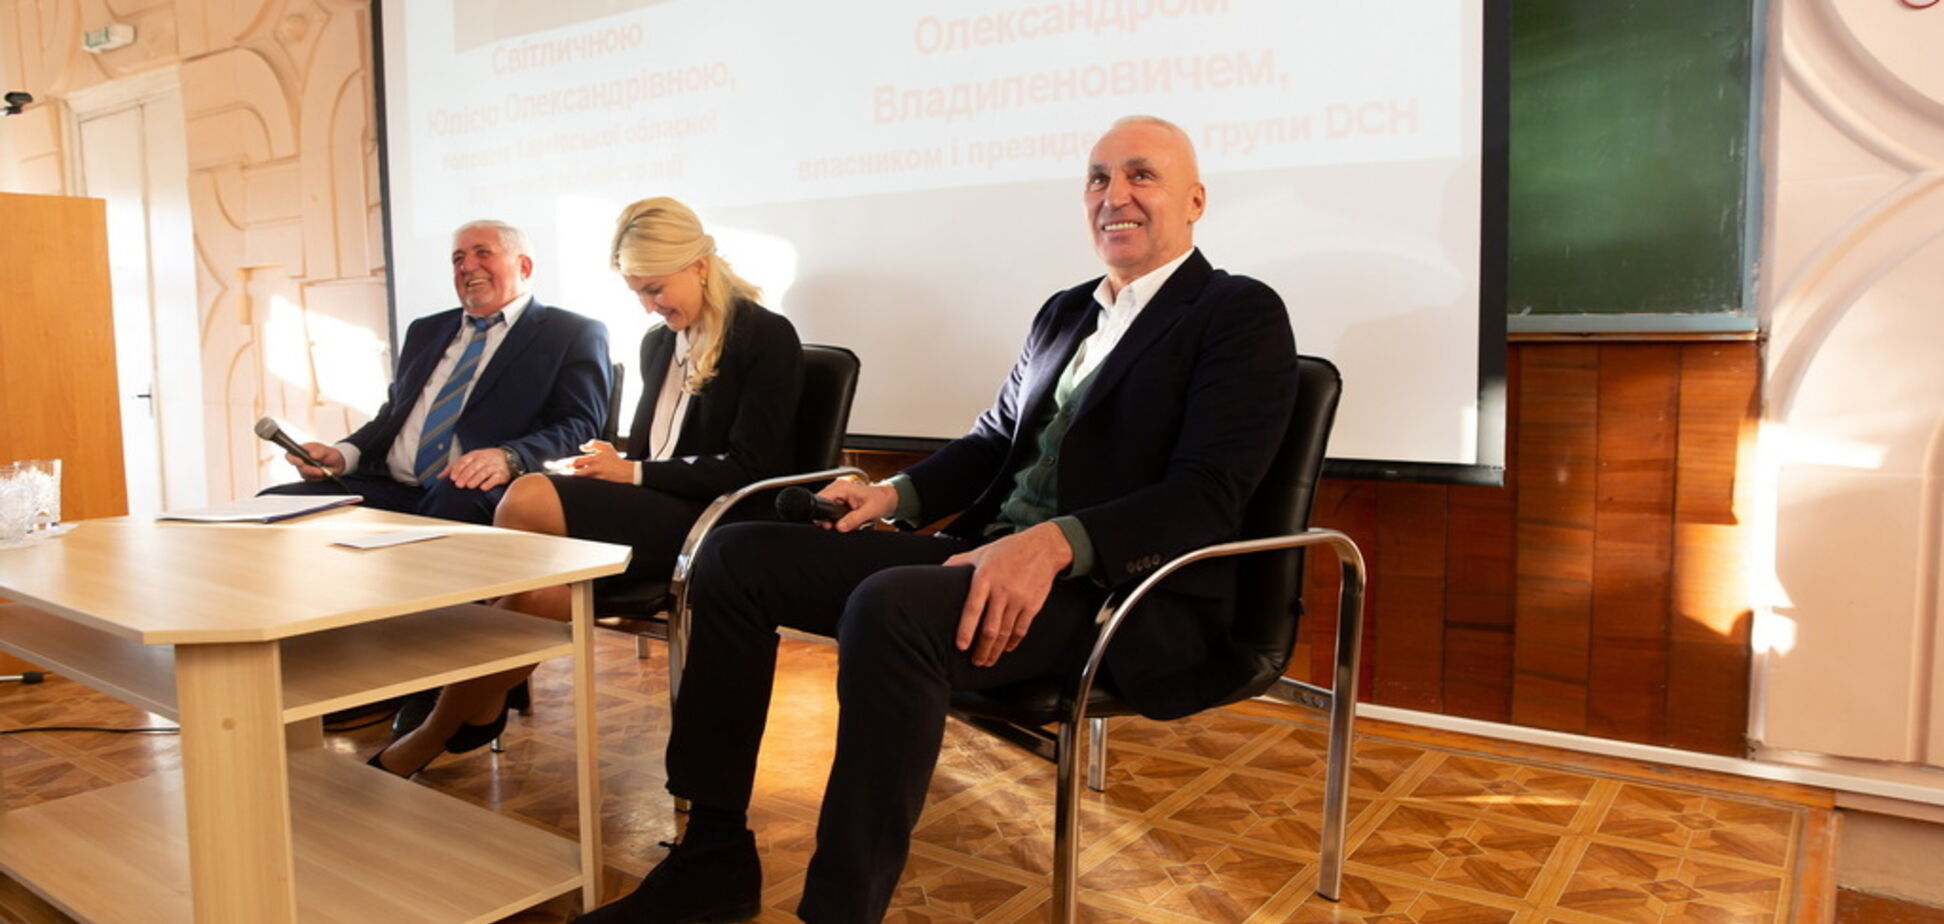 Ярославский рассказал журналистам и студентам, как развивает ХТЗ